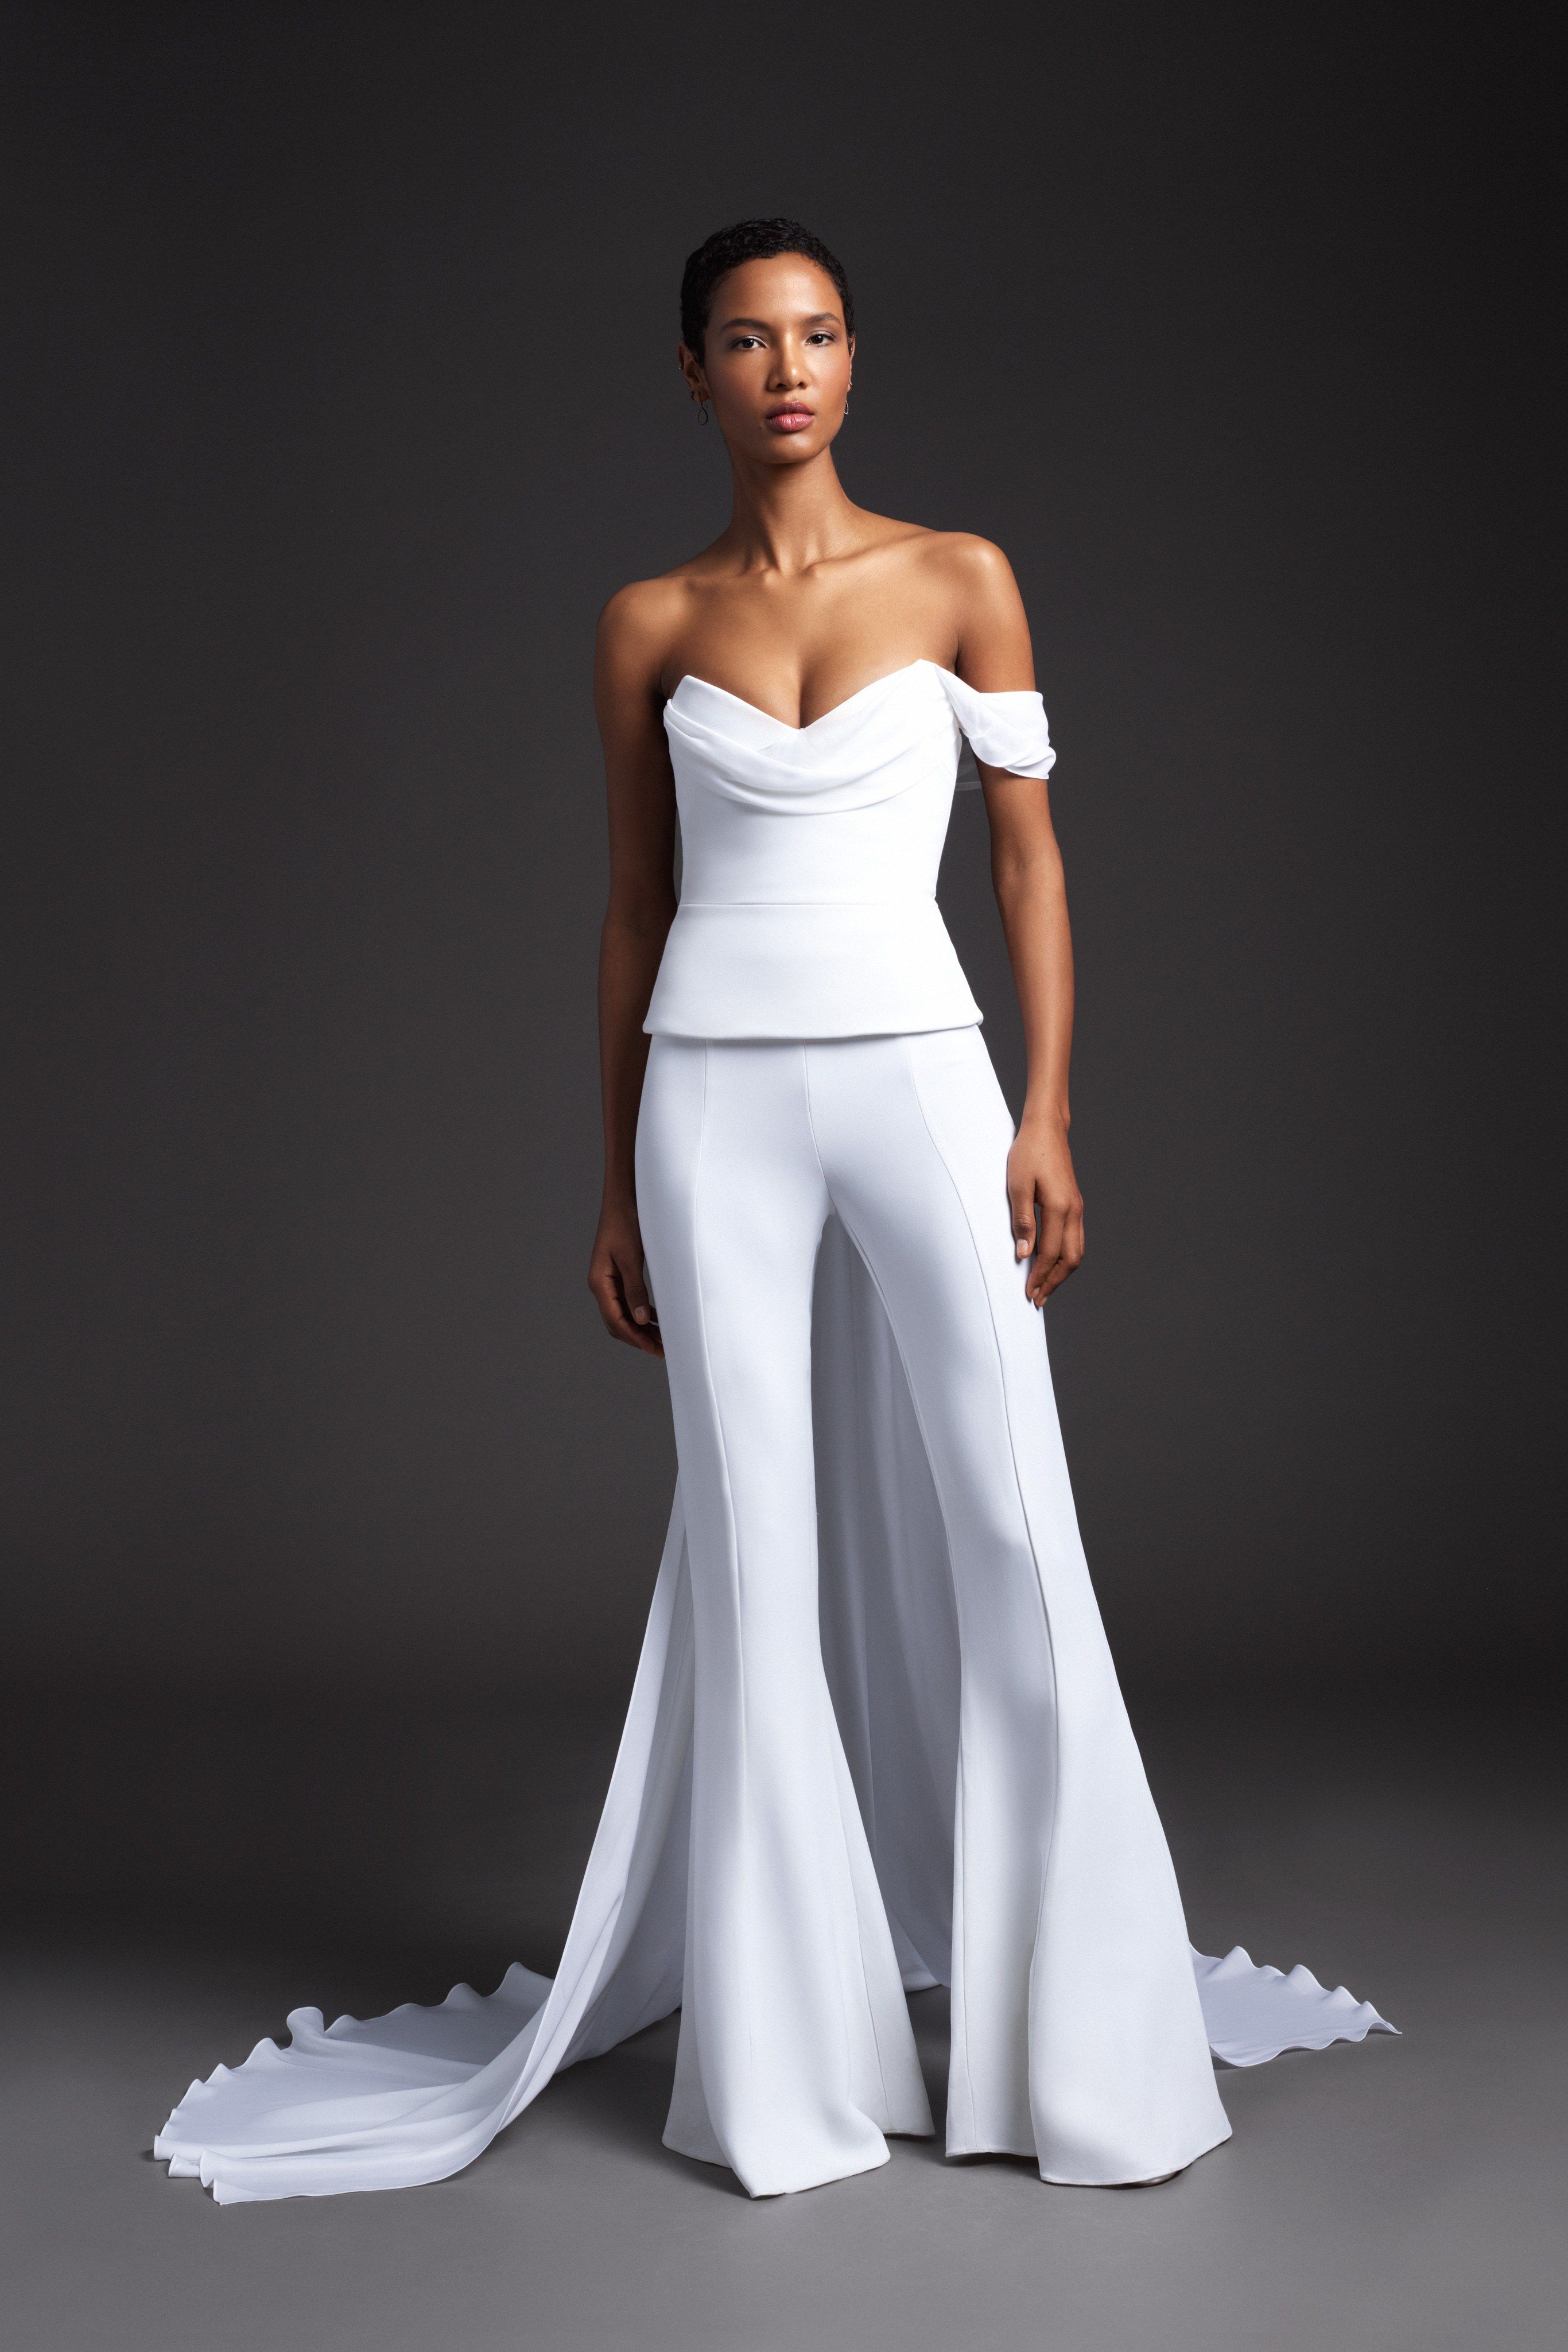 Best Winter Wedding Dresses ☀ Trends ...